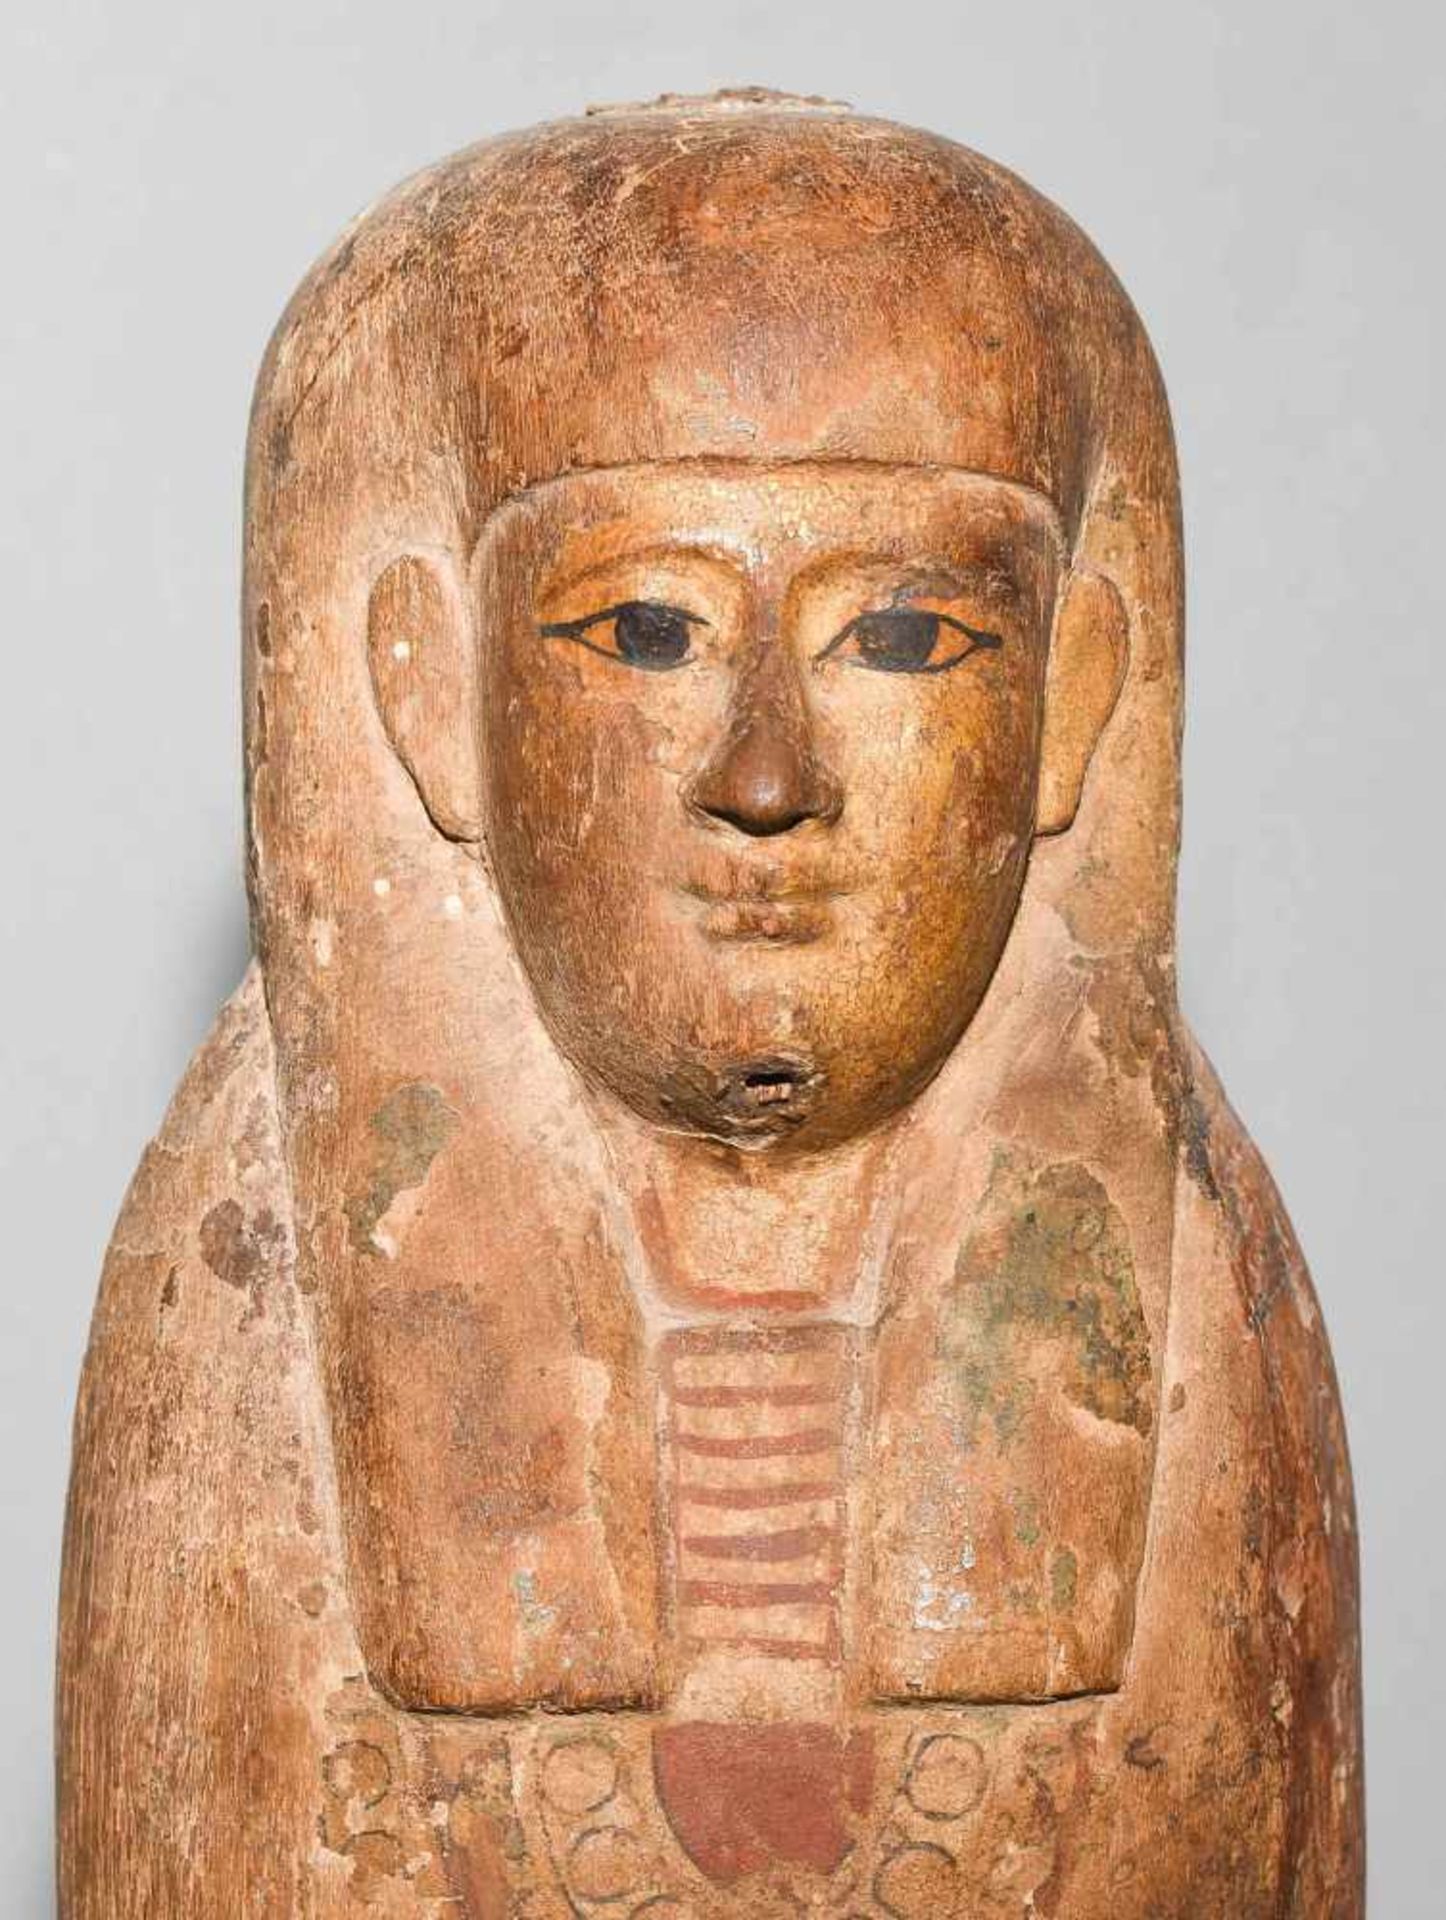 Ptah-Sokar-OsirisAegypten, Spätzeit, ca. 350 v.C. Holz mit Resten von Bemalung und Vergoldung. - Bild 6 aus 10